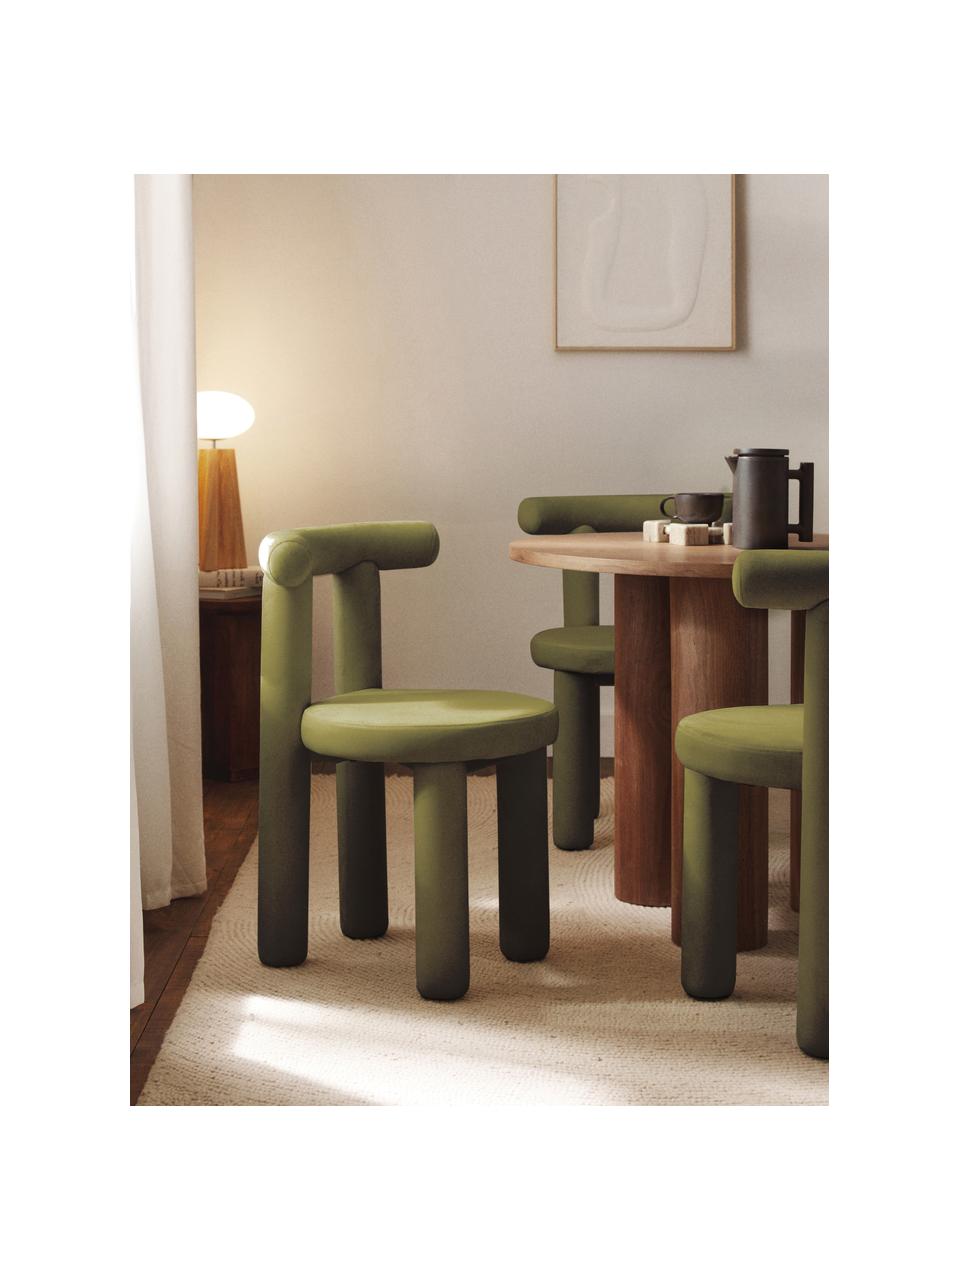 Krzesło tapicerowane z aksamitu Calan, Tapicerka: 100% poliester Dzięki tka, Oliwkowy zielony aksamit, S 55 x W 52 cm